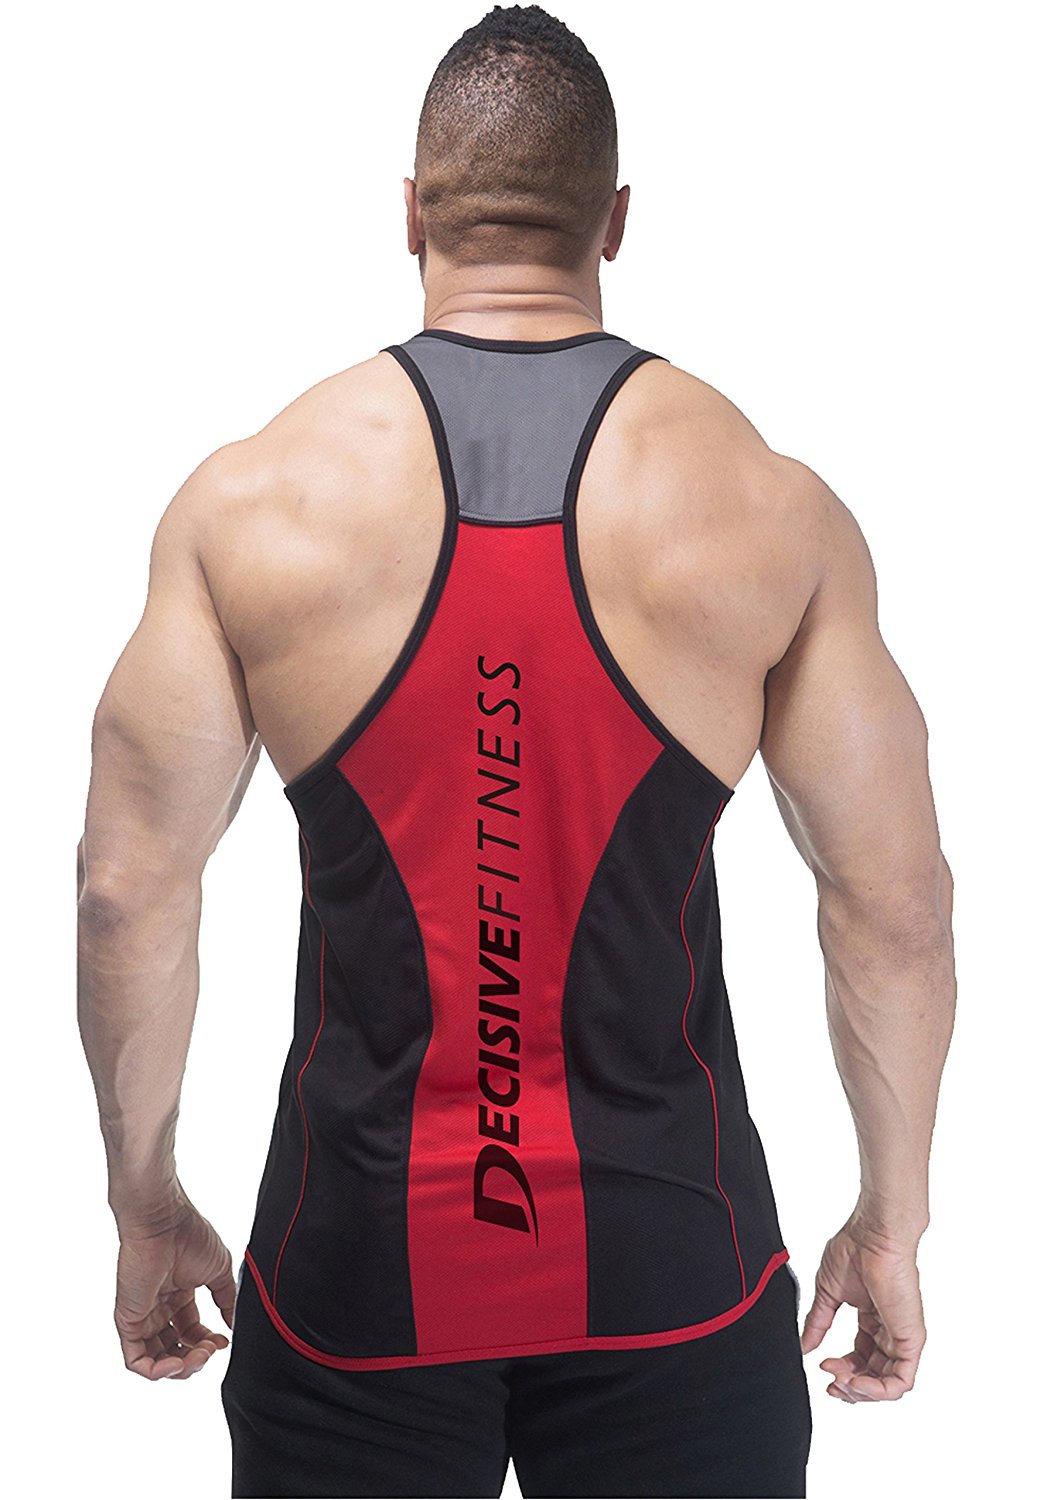 Decisive Fitness Designer Gym Stringer Vest, Gym Vest, Racer Back (Black-Red)